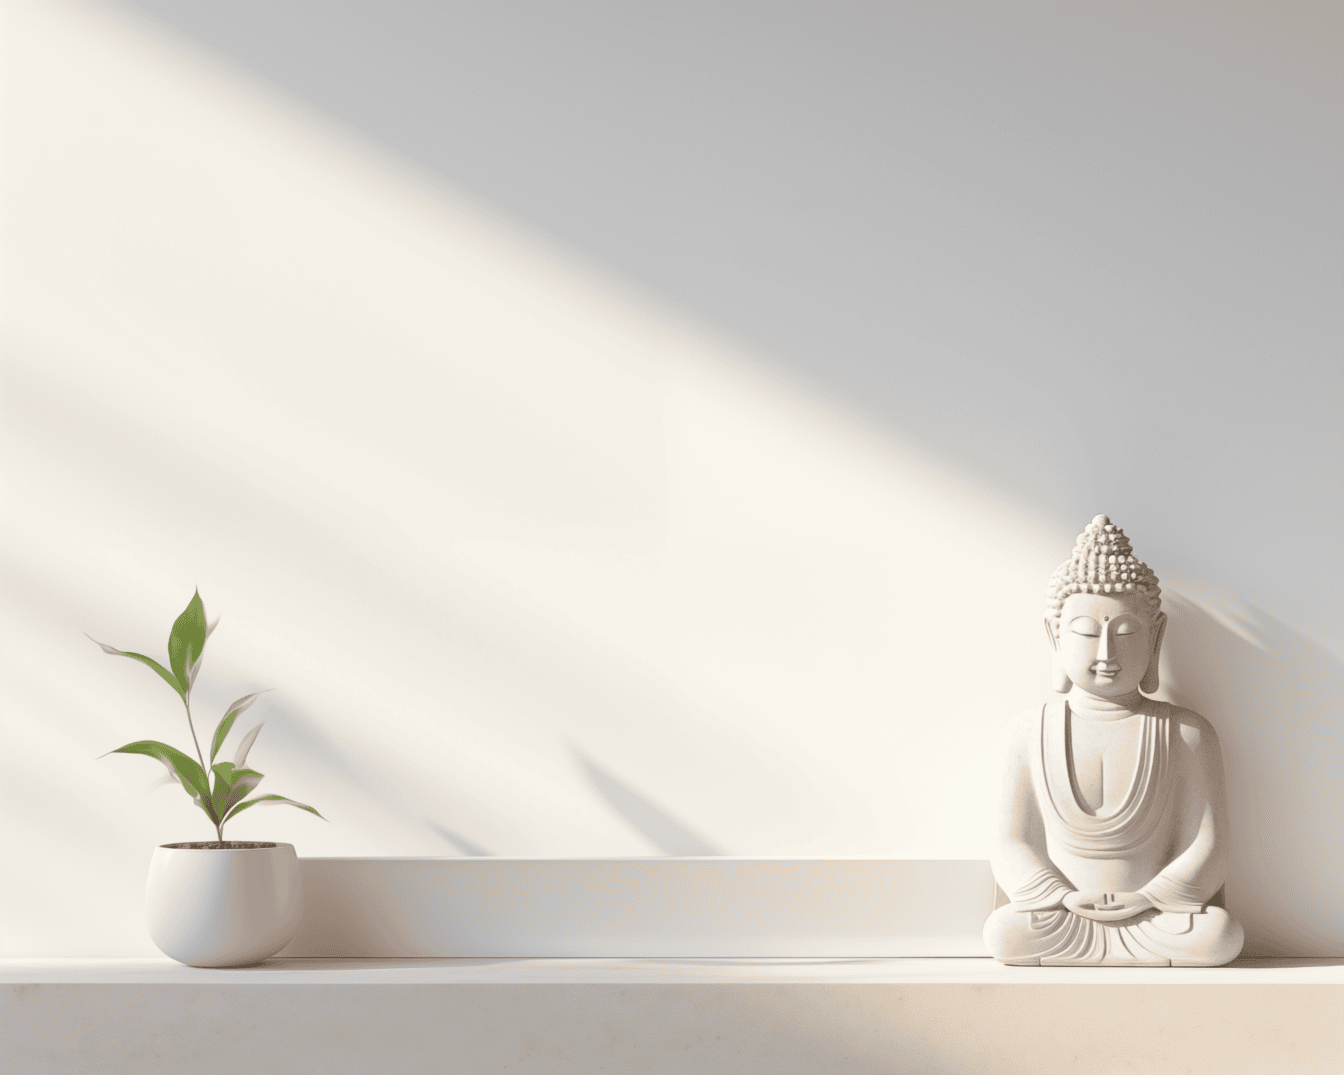 Vit statyett av en mediterande buddha i lotusställning på hyllan på vit vägg under mild skugga